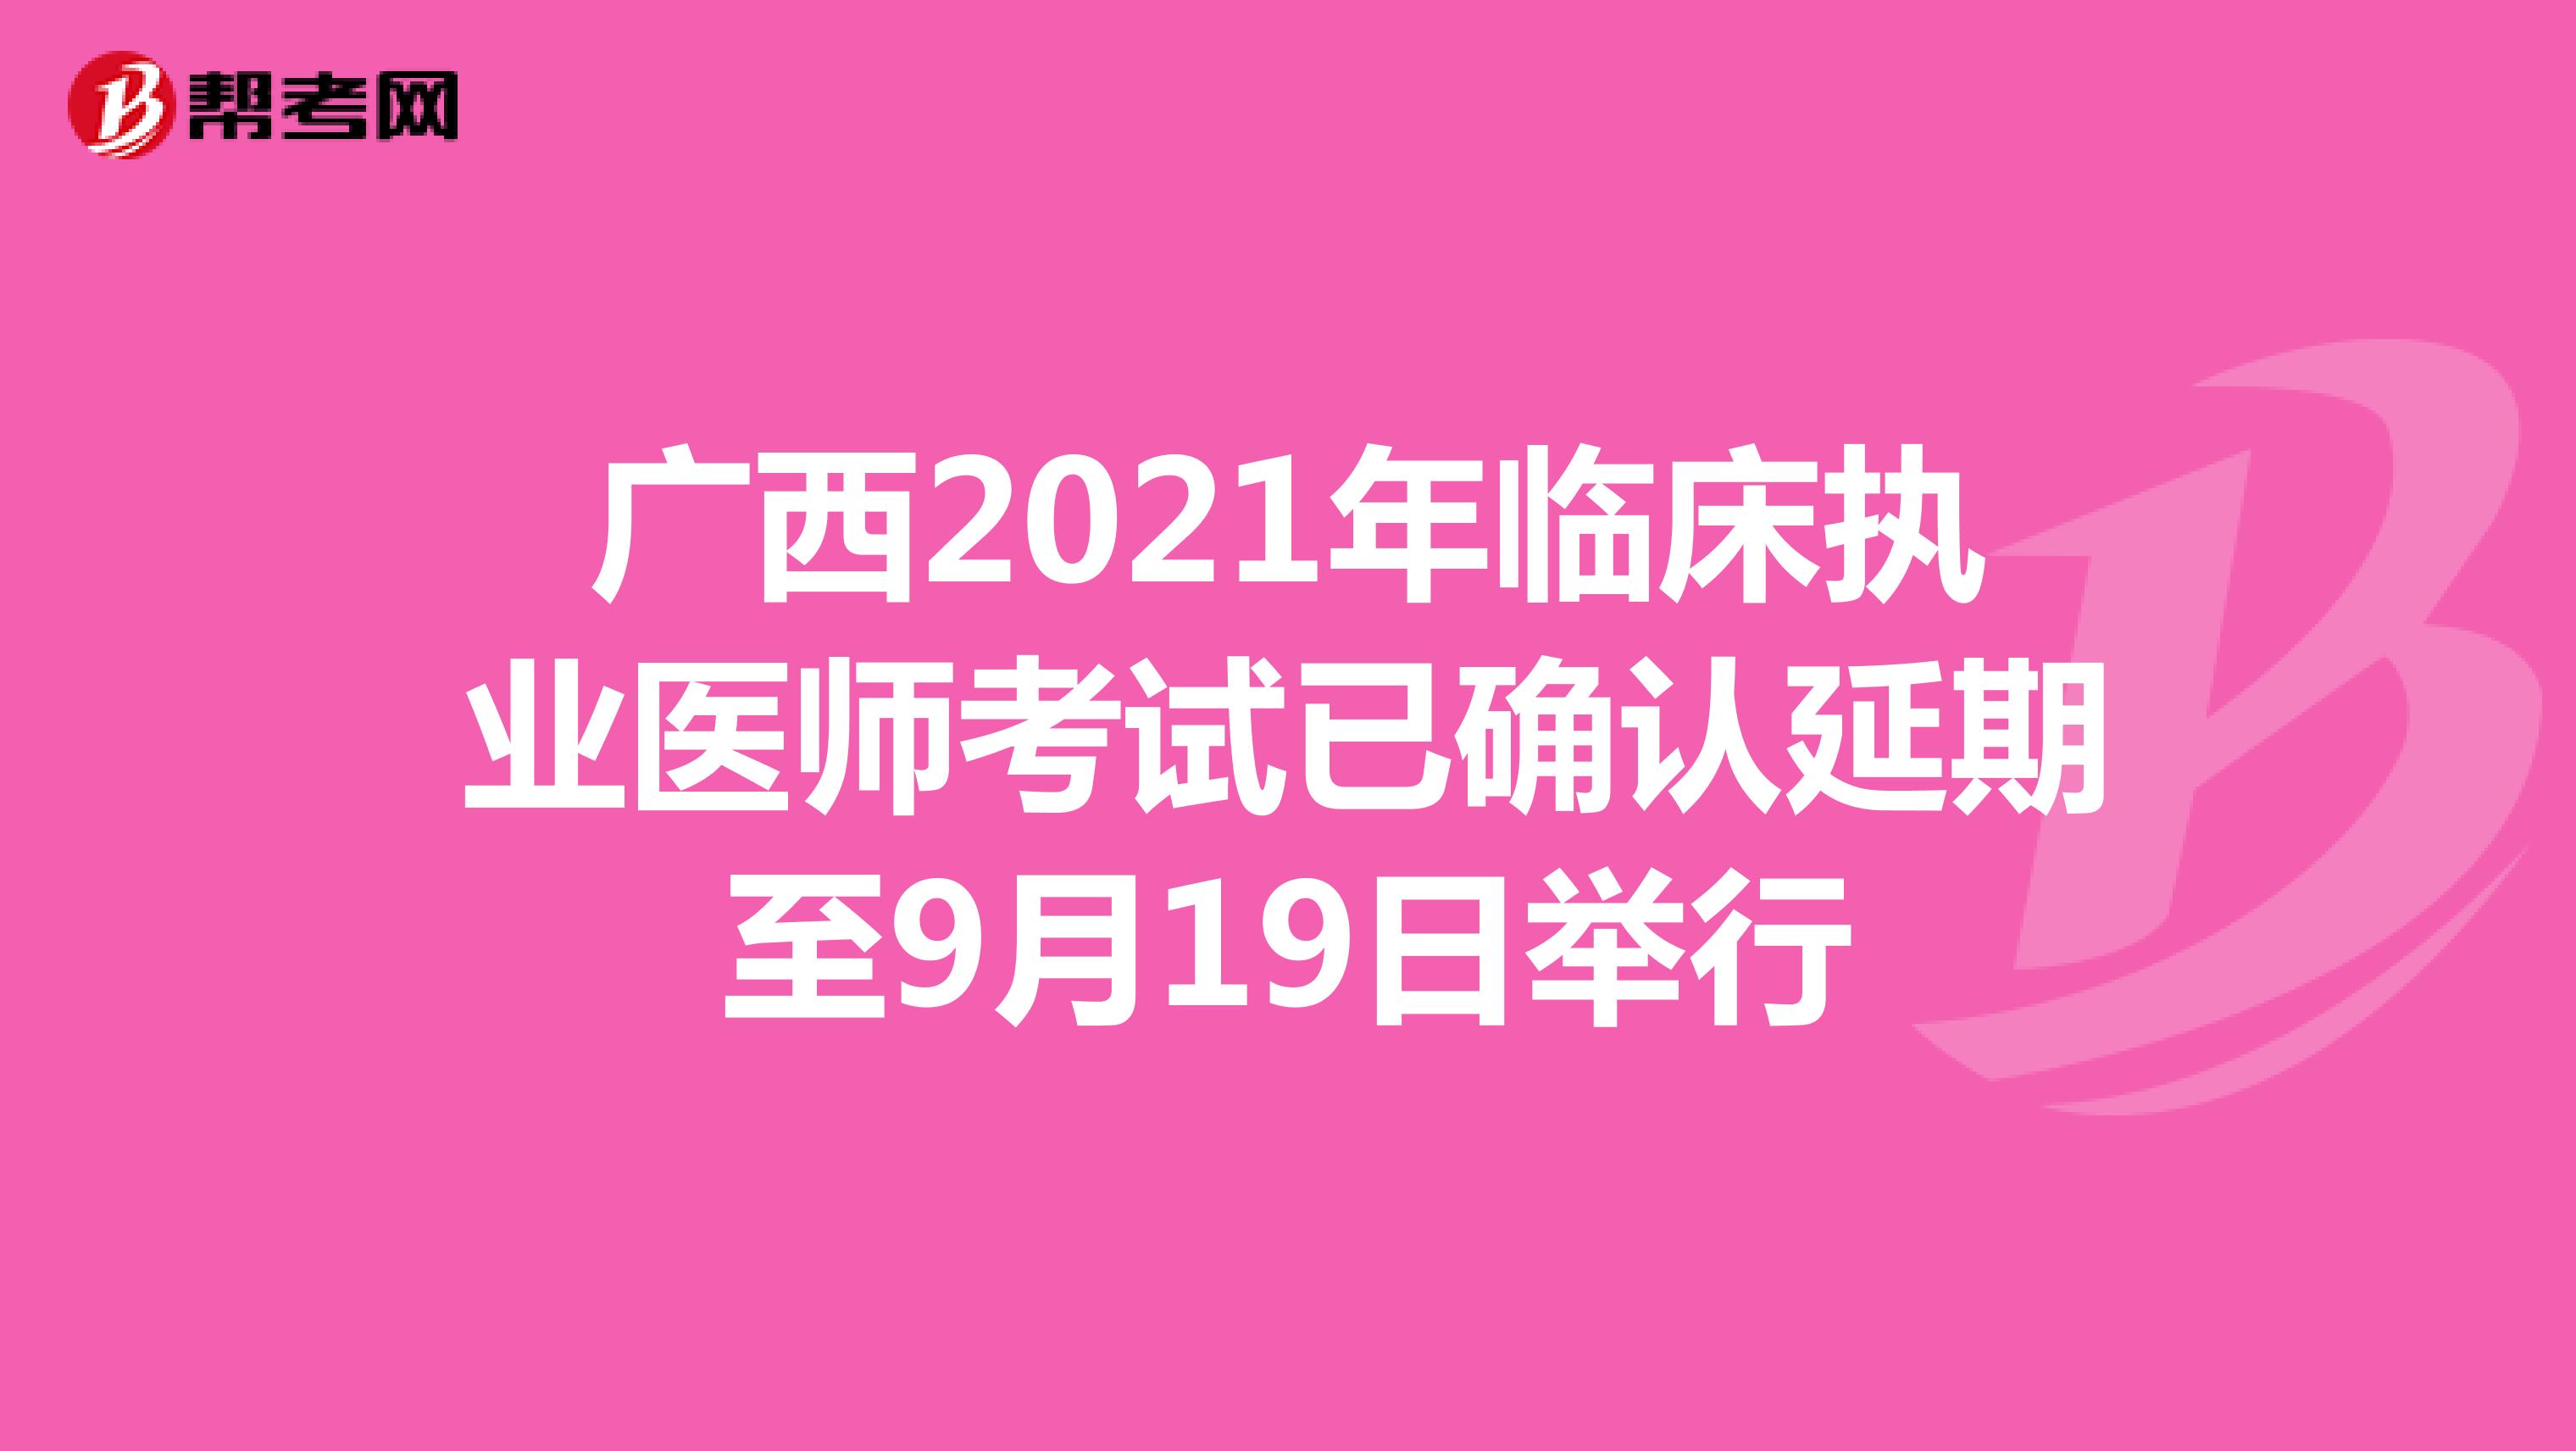 广西2021年临床执业医师考试已确认延期至9月19日举行